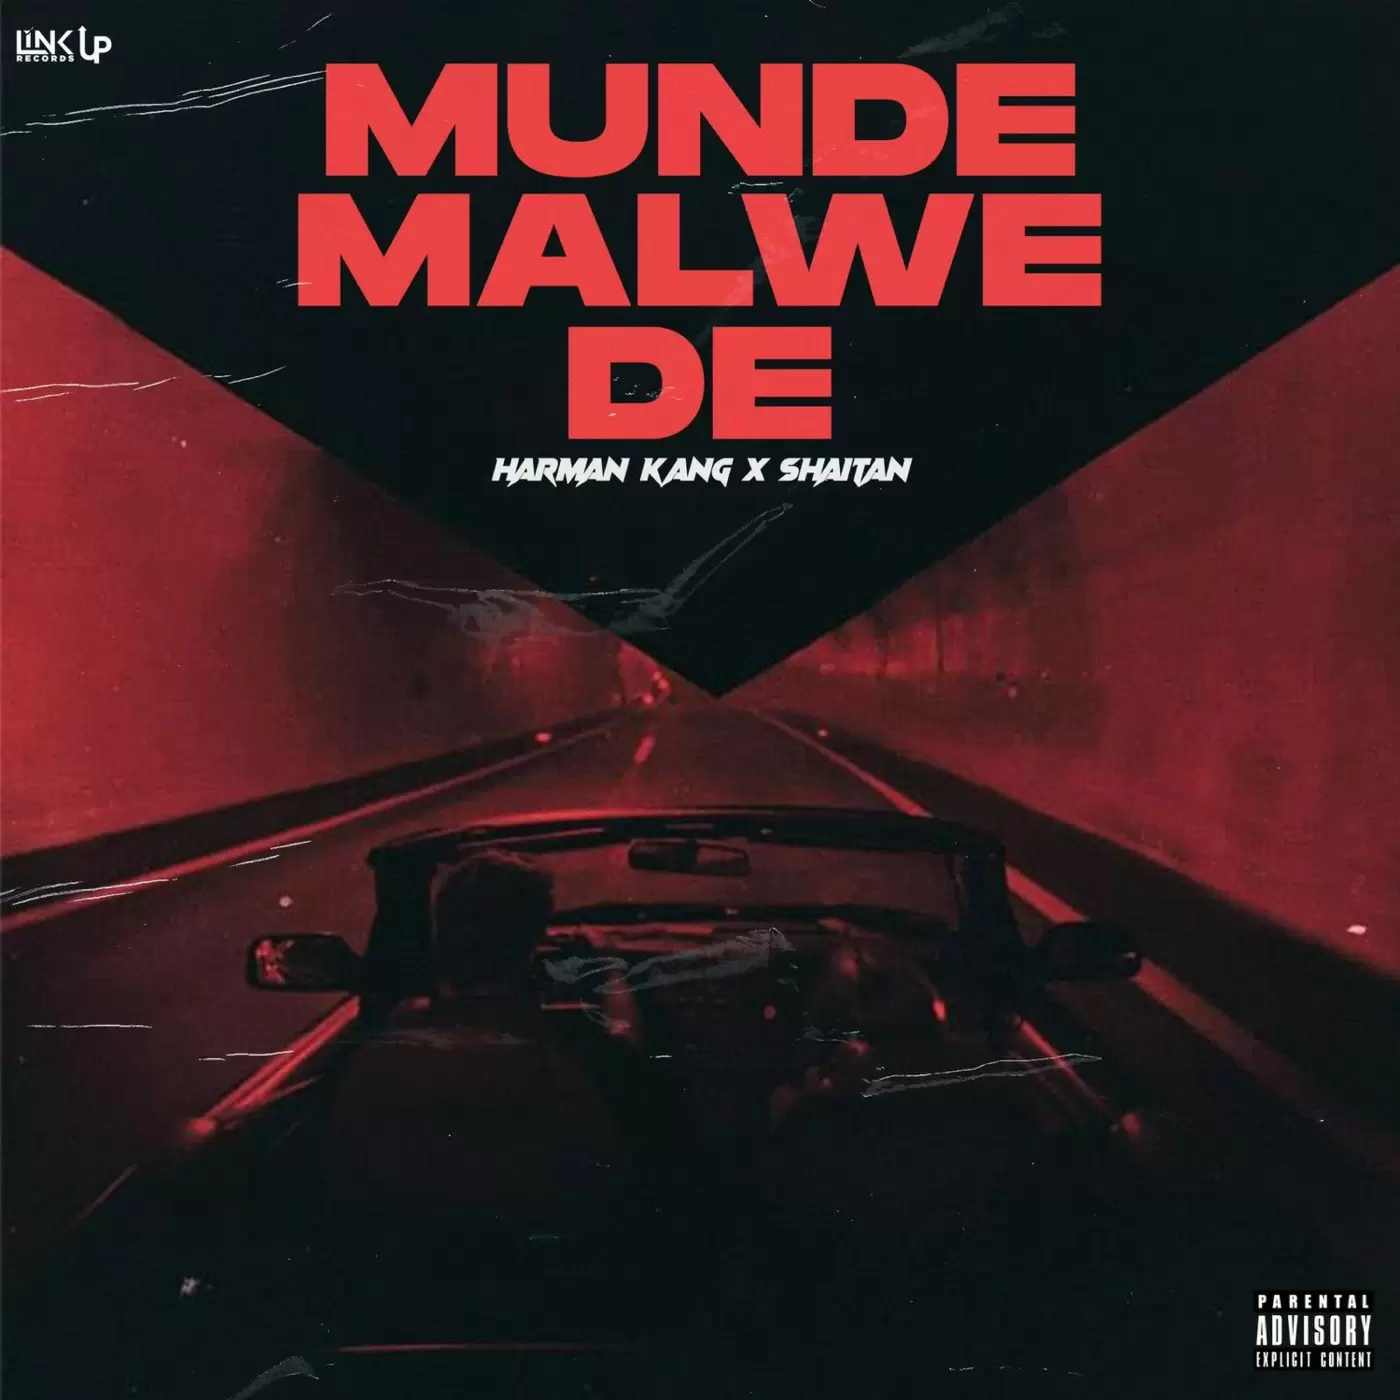 Munde Malwe De - Single Song by Harman Kang - Mr-Punjab